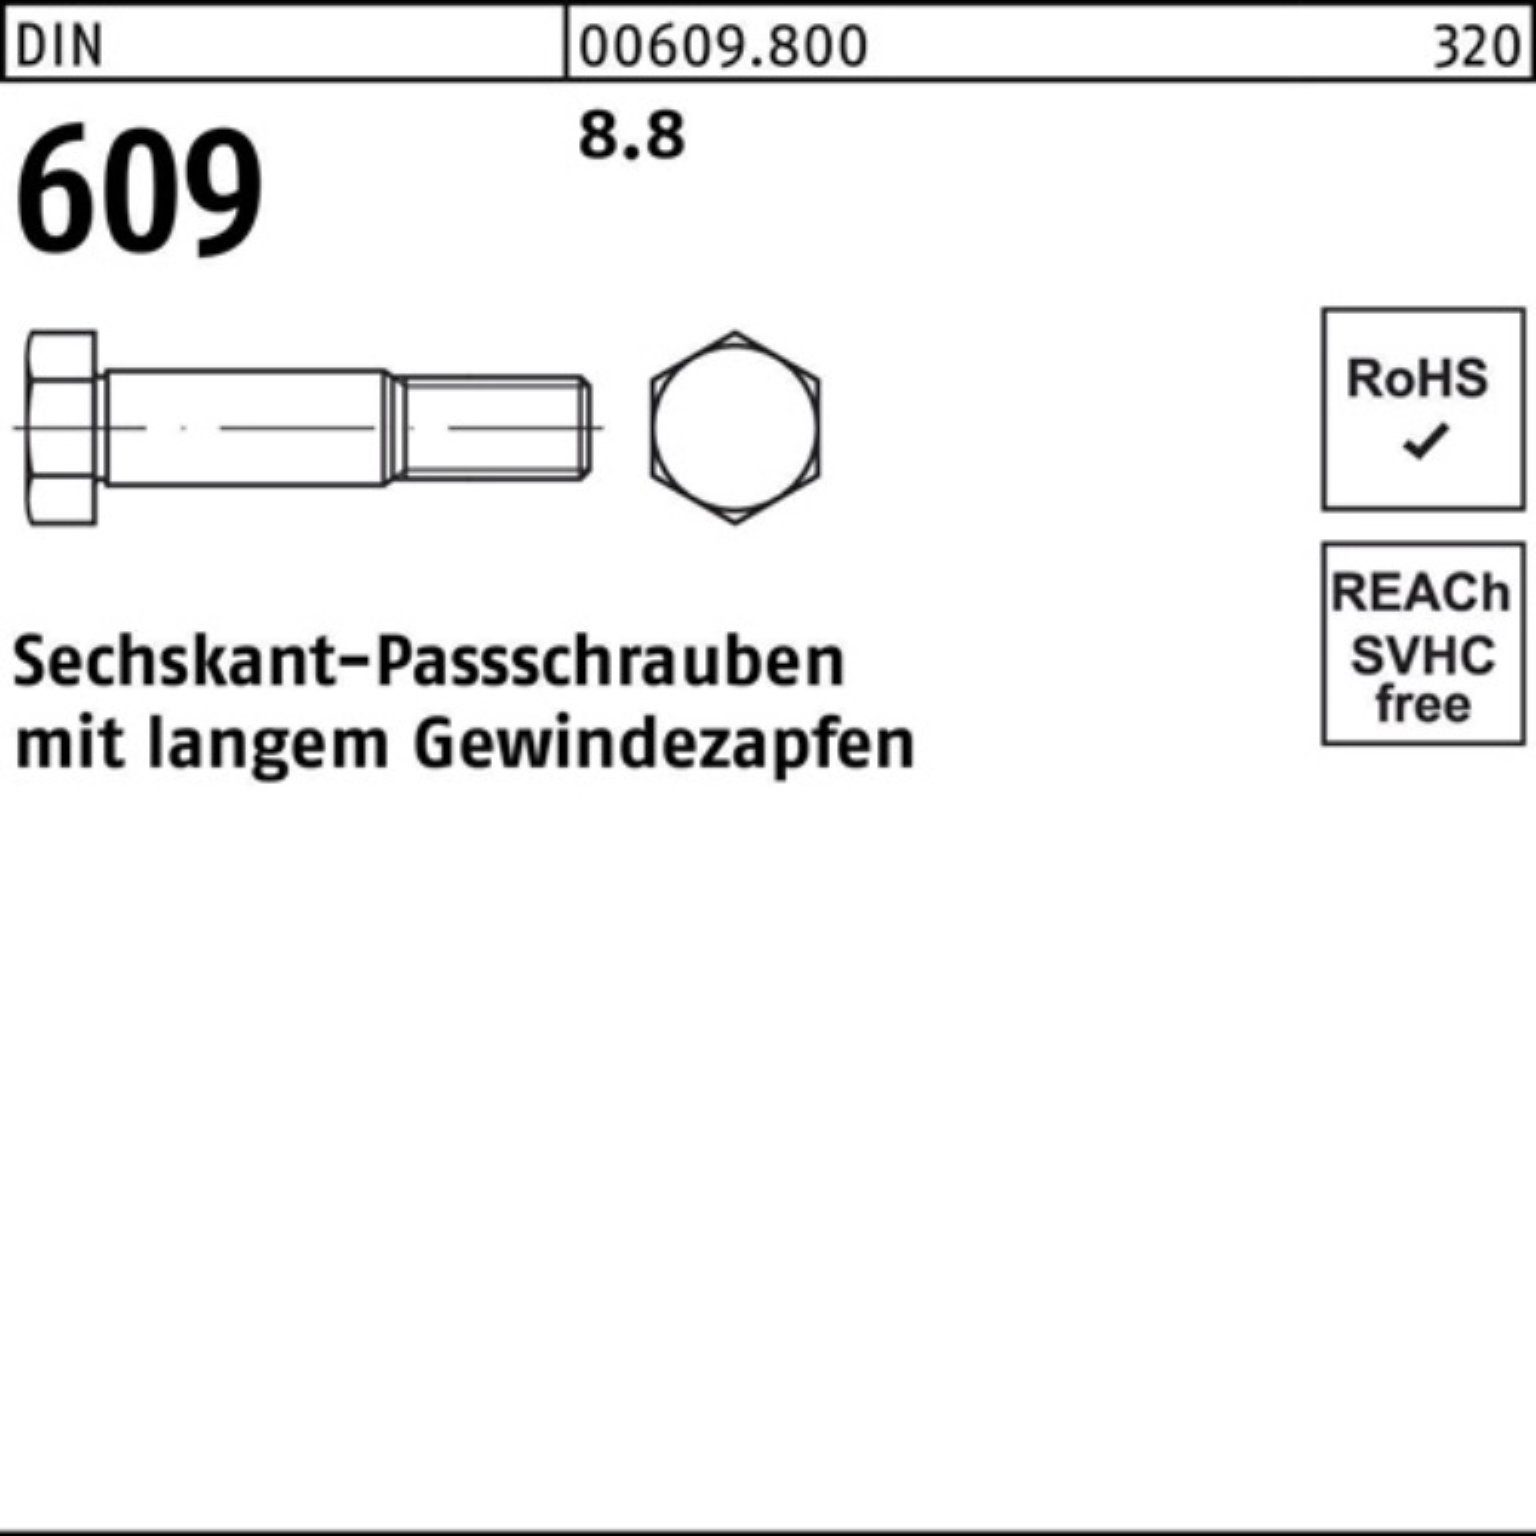 85 M30x Pack DIN Sechskantpassschraube langem 100er Schraube Gewindezapfen 609 Reyher